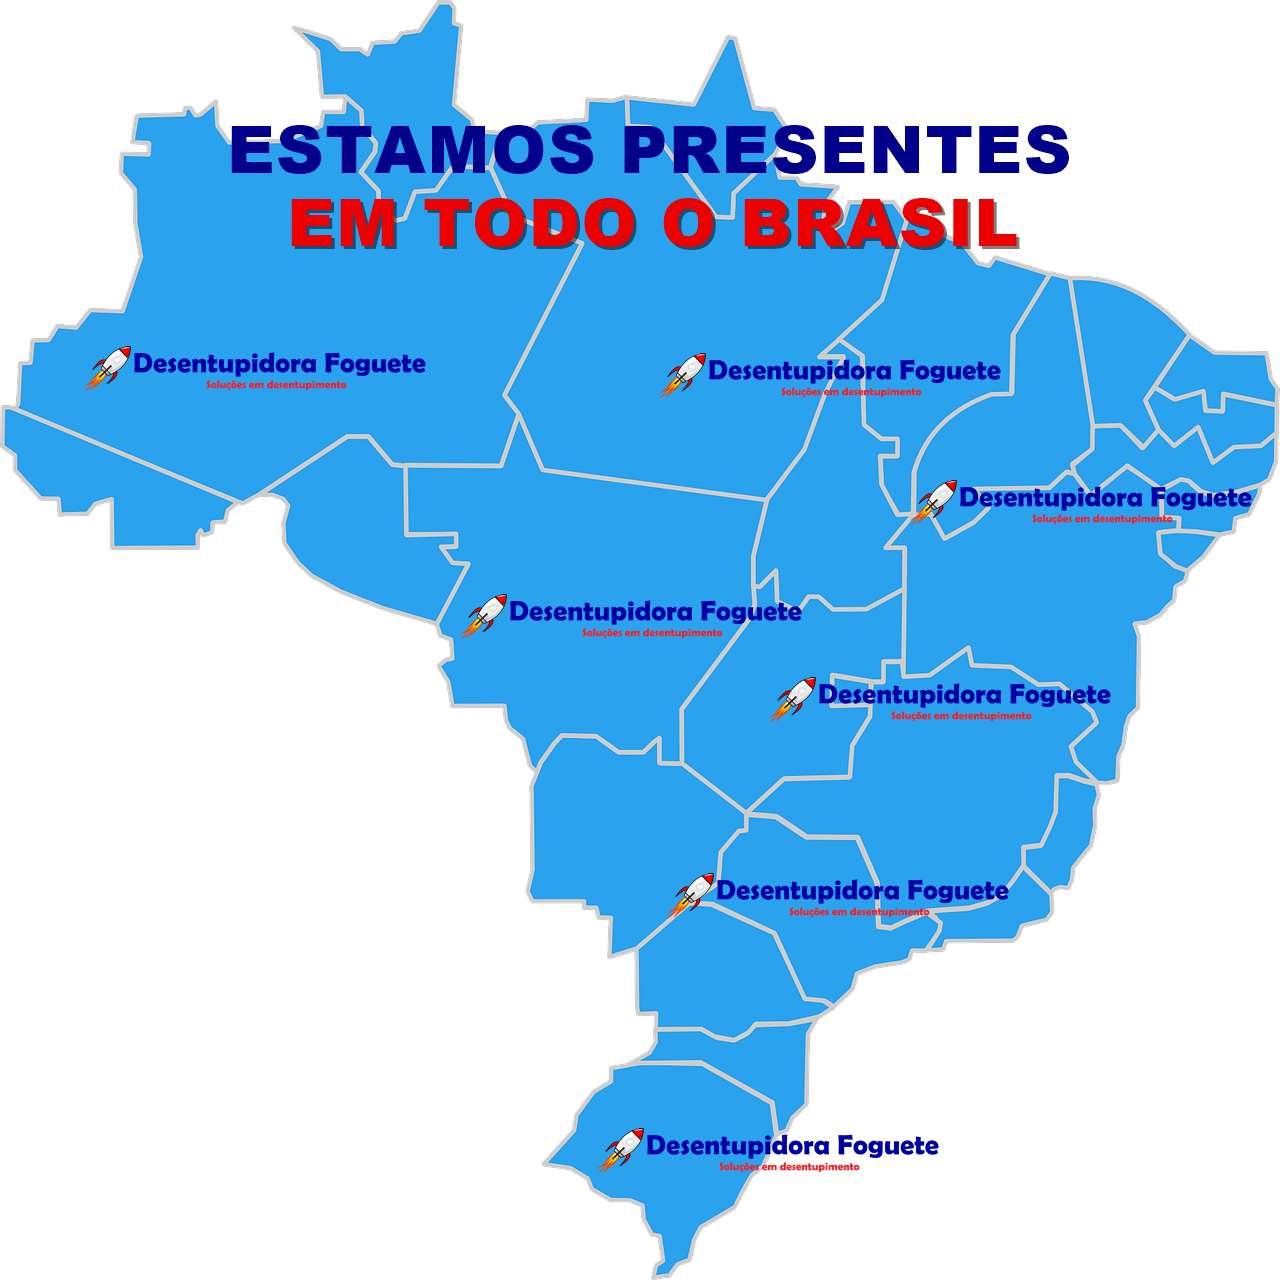 Desentupidora no Brasil